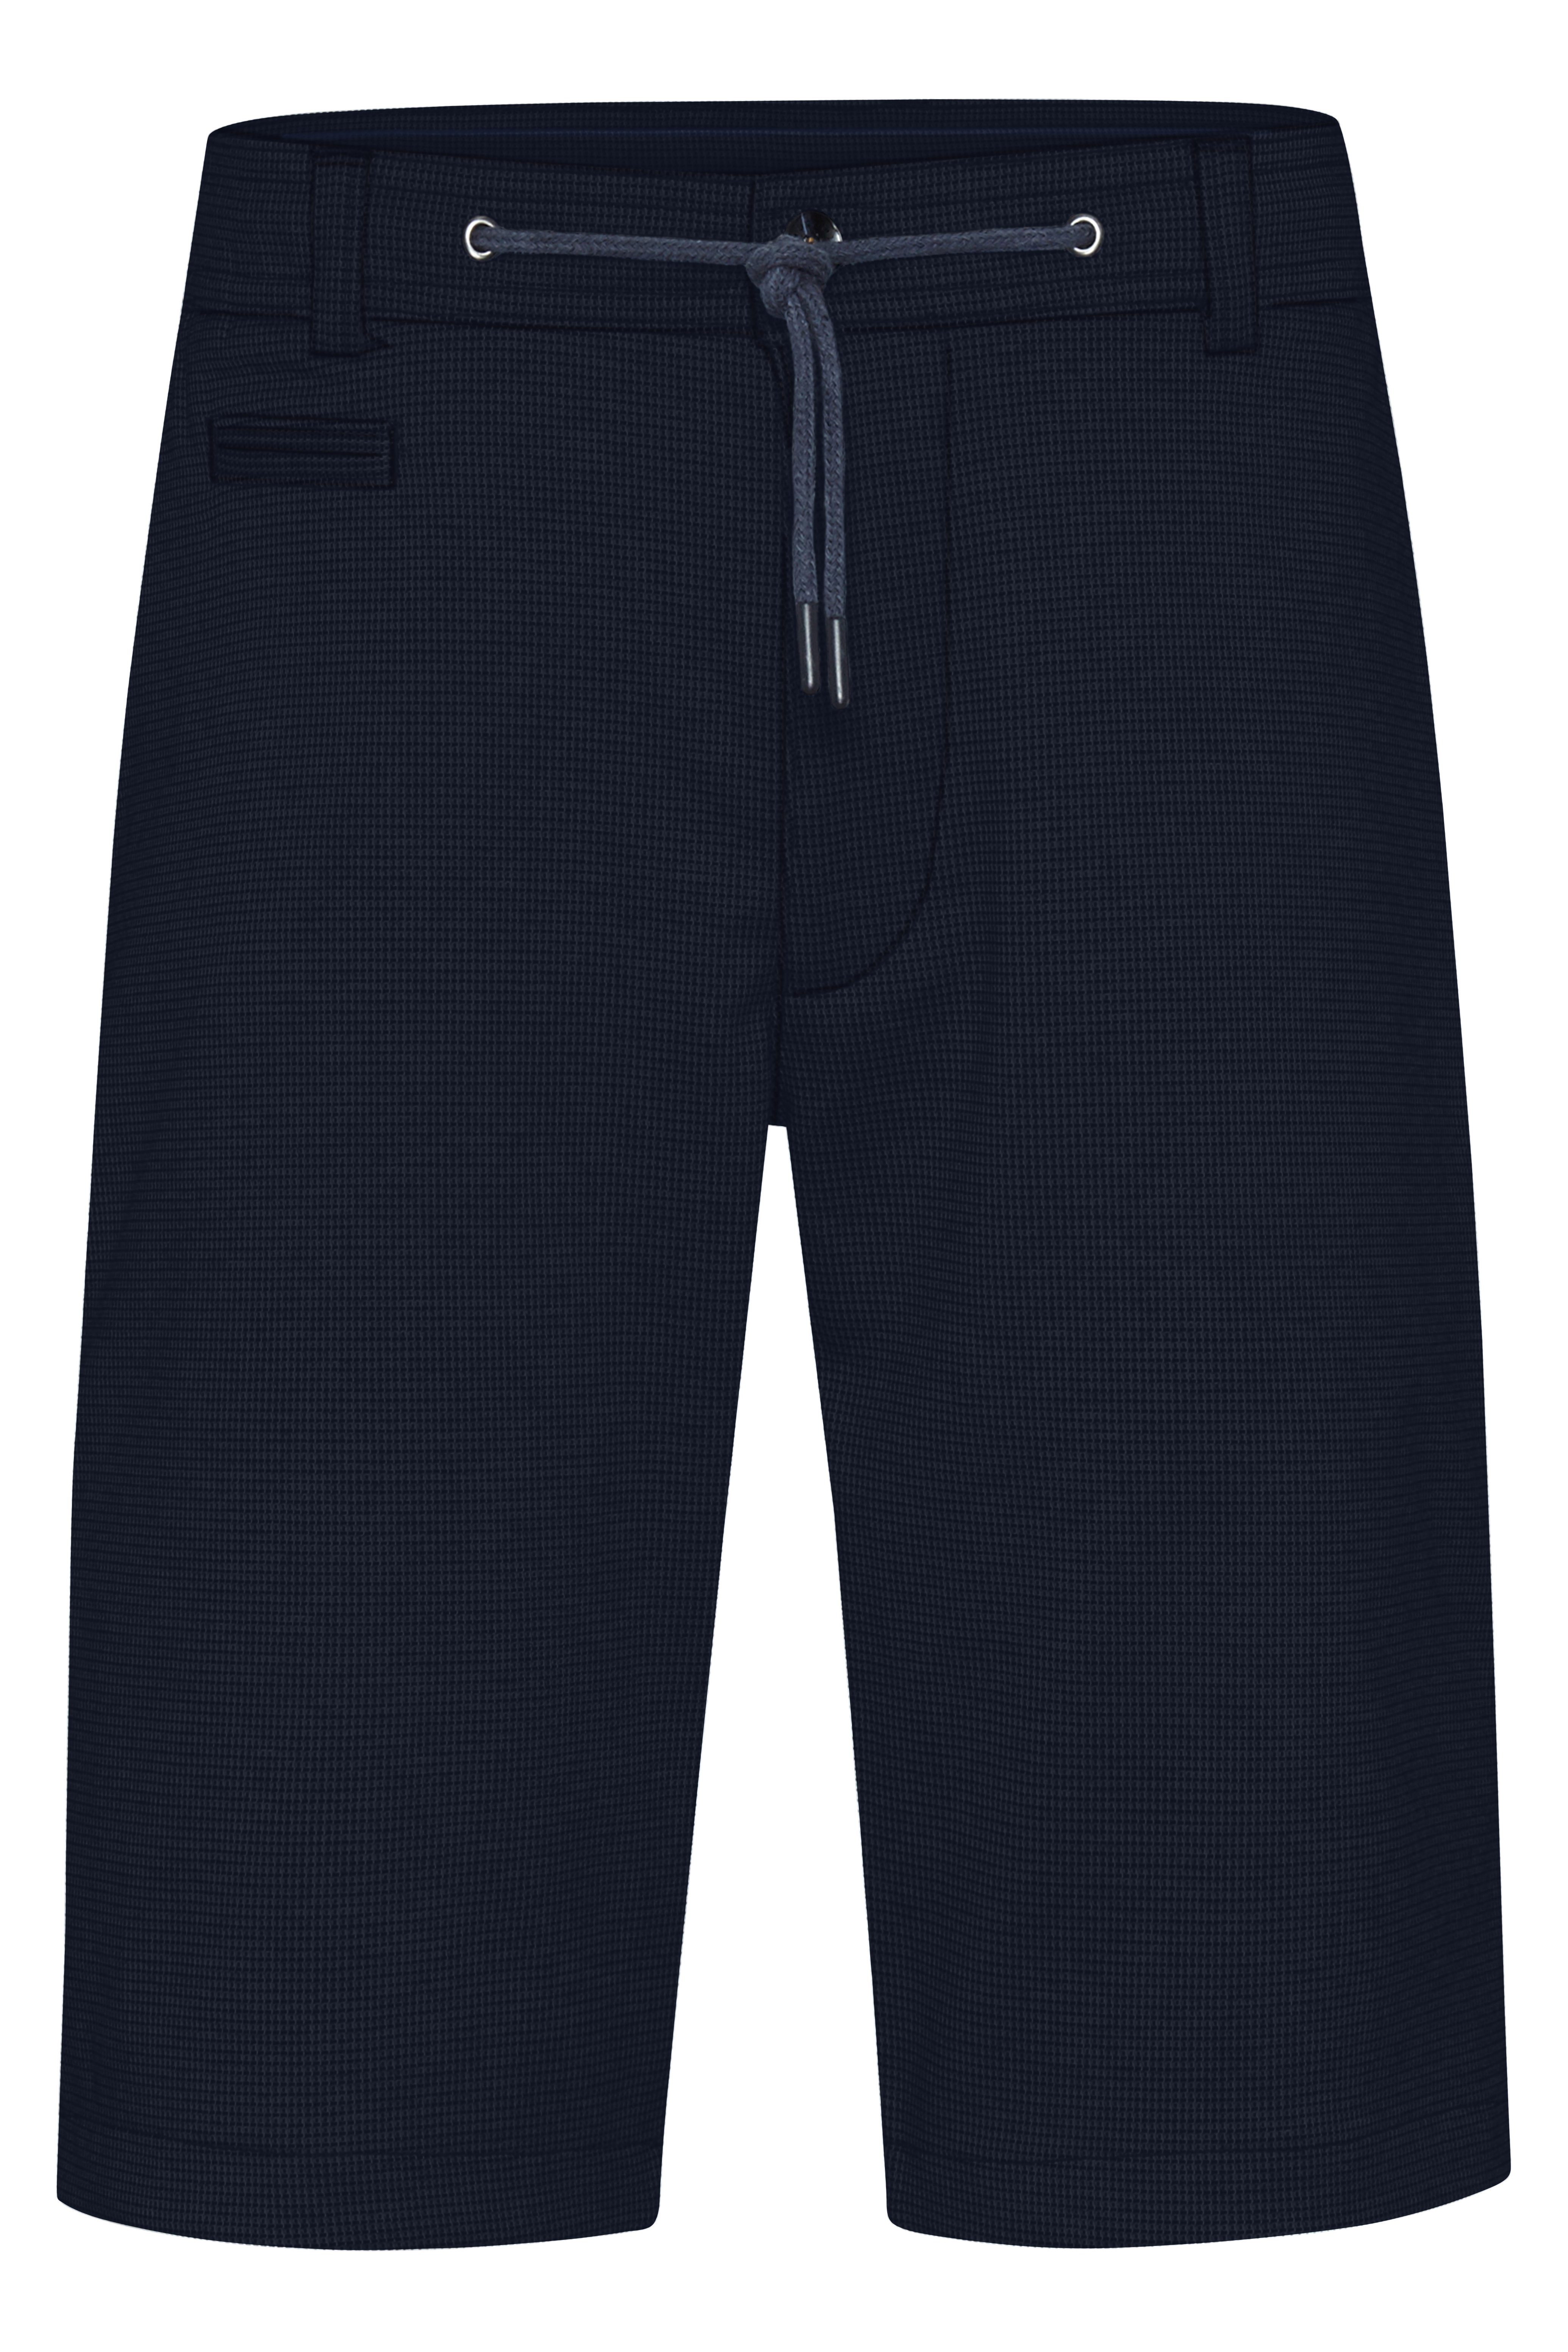 bugatti Shorts | Shorts